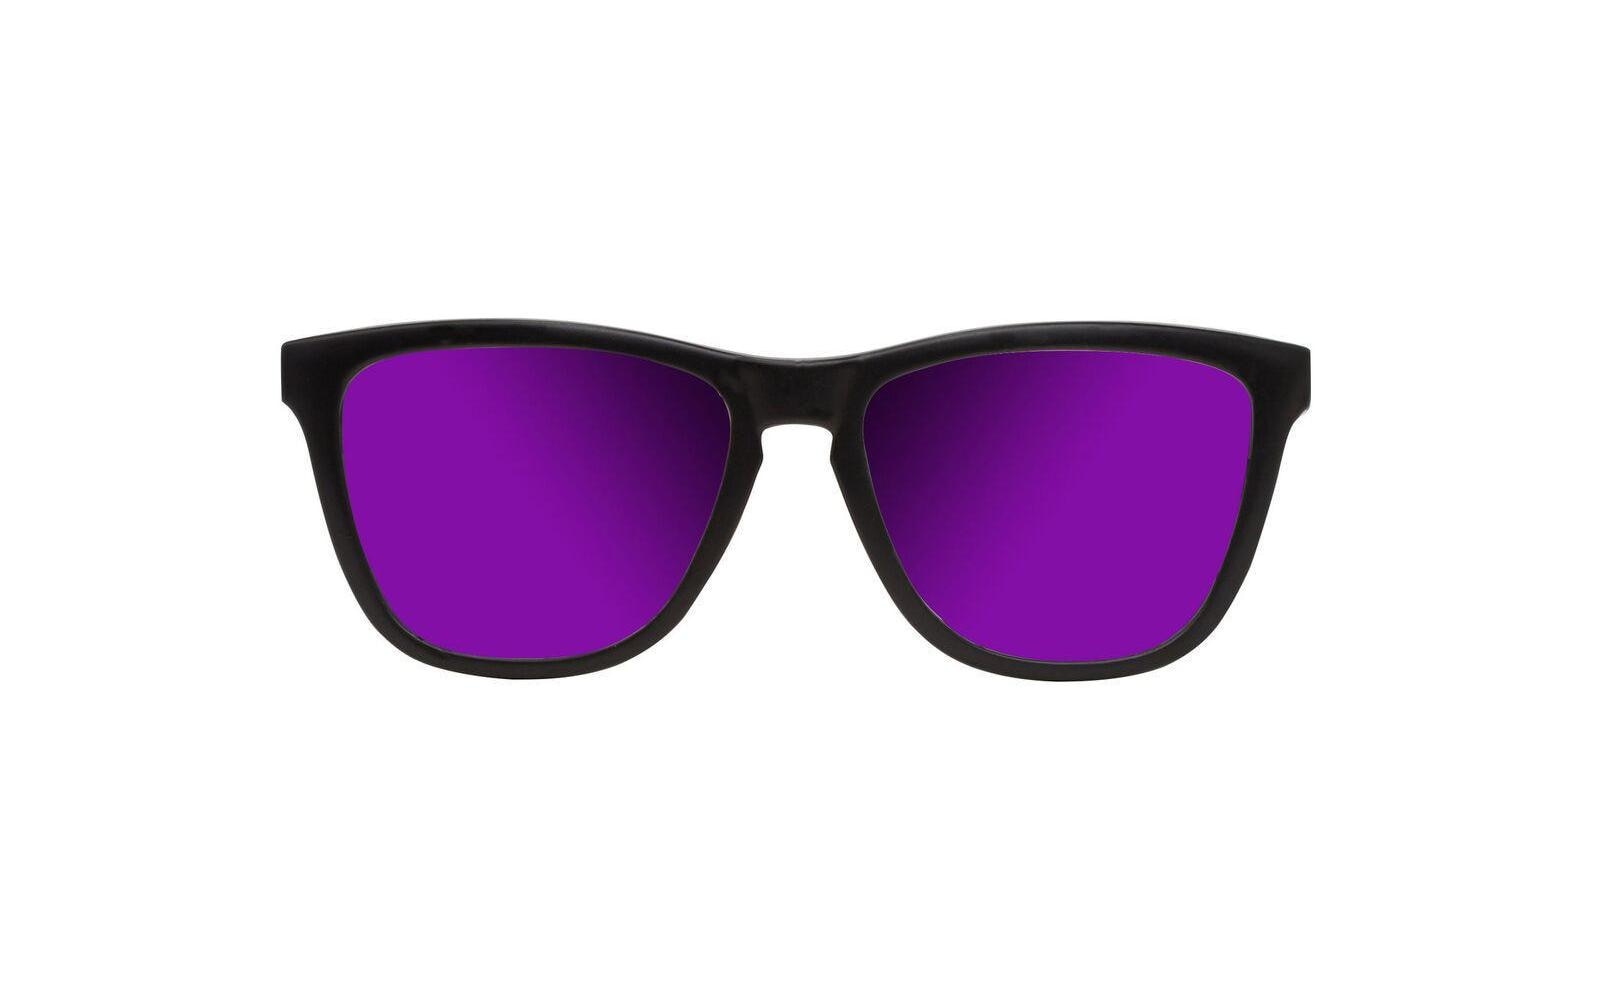 ➤ Sonnenbrillen ohne Mindestbestellwert shoppen